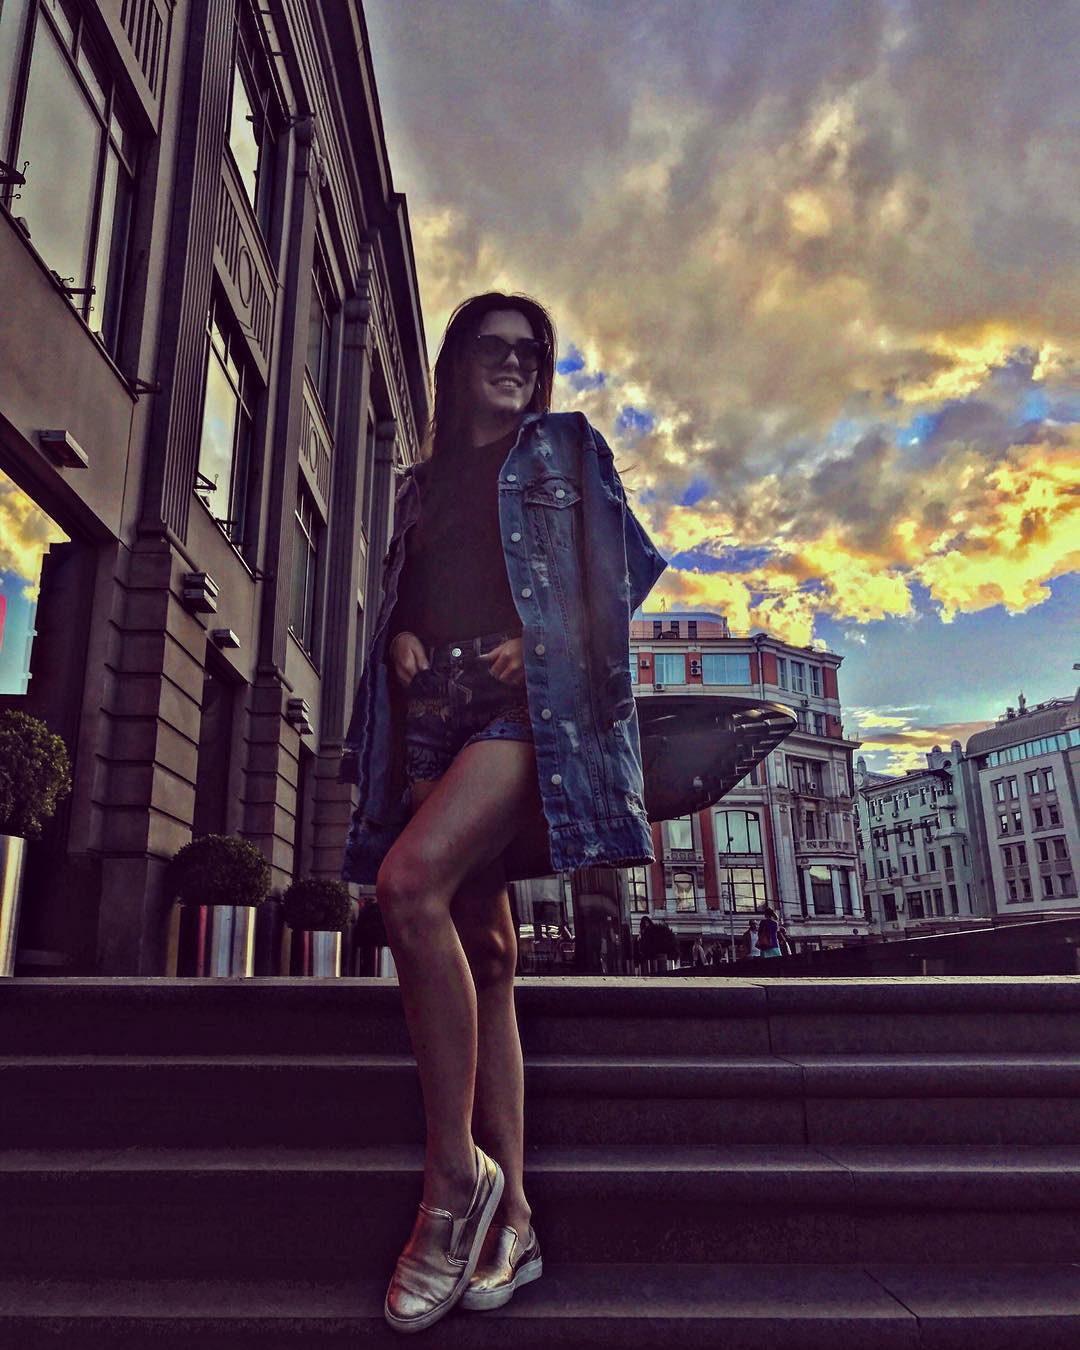 Аделина Сотникова добавила новую фотку в соц.сети Инстаграм